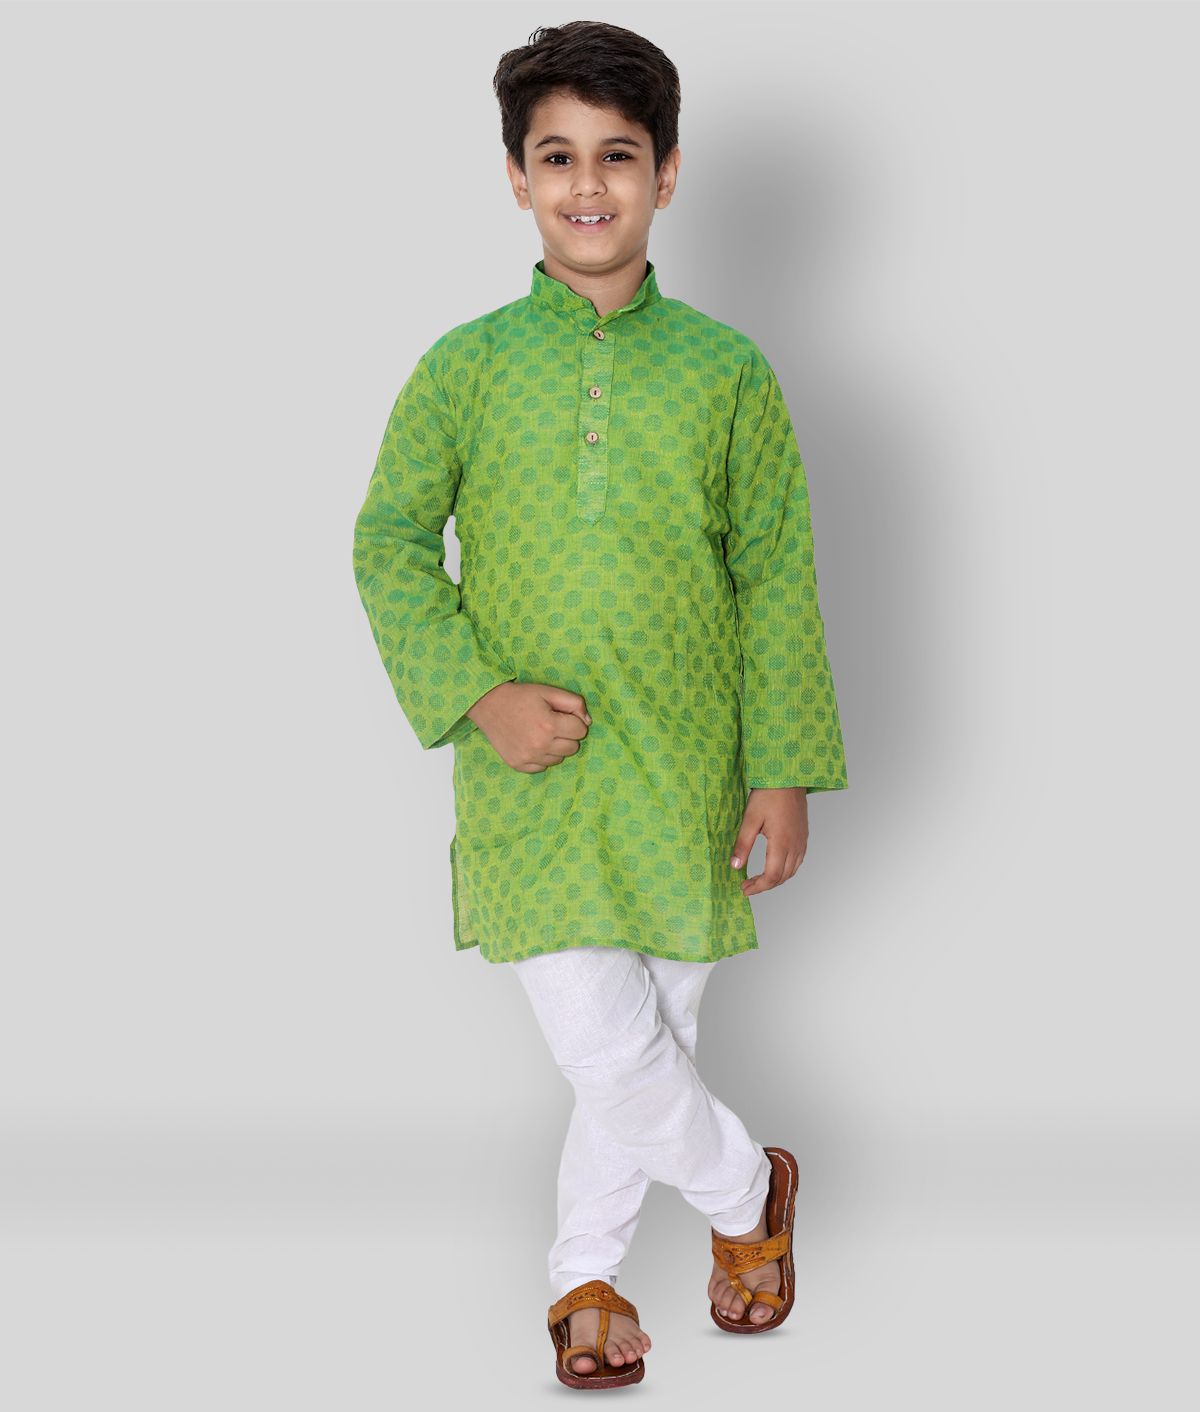     			Fourfolds Ethnic Wear Kurta Pyjama Set for kids and Boys_j004